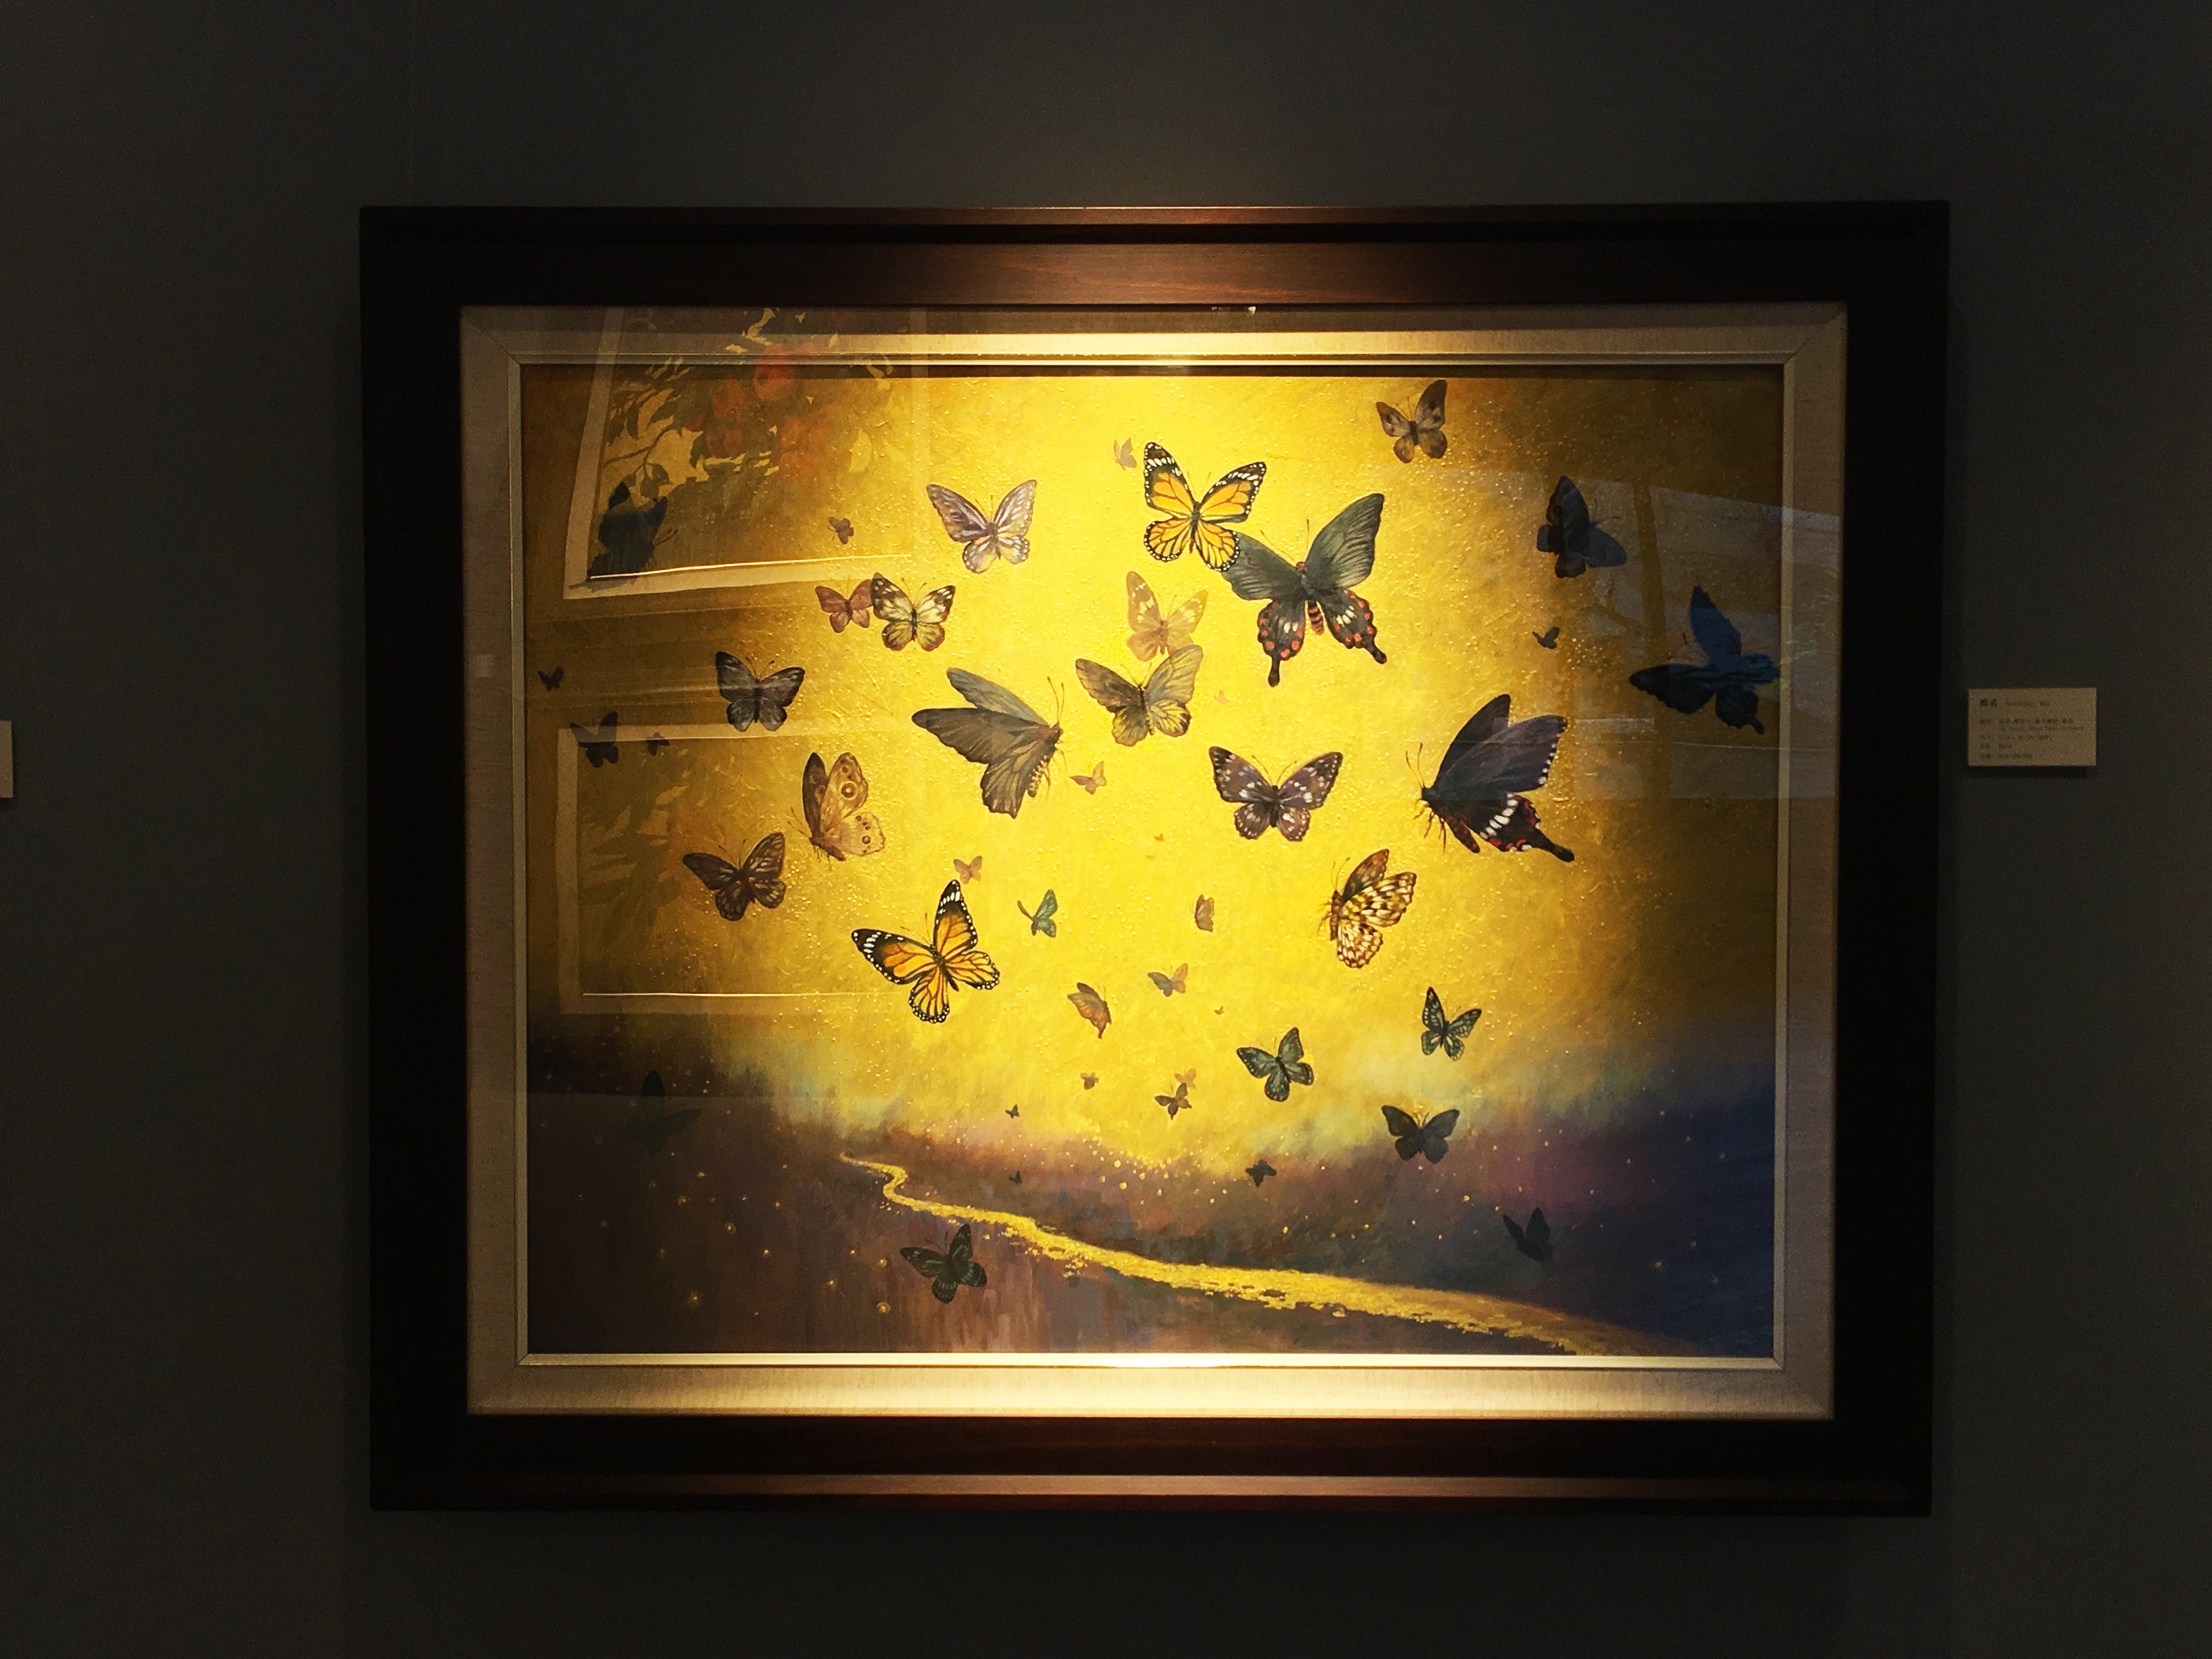 劉子平，《蝶道》，72.5 x 91 cm，油彩、壓克力、綜合媒材、畫布，2019。